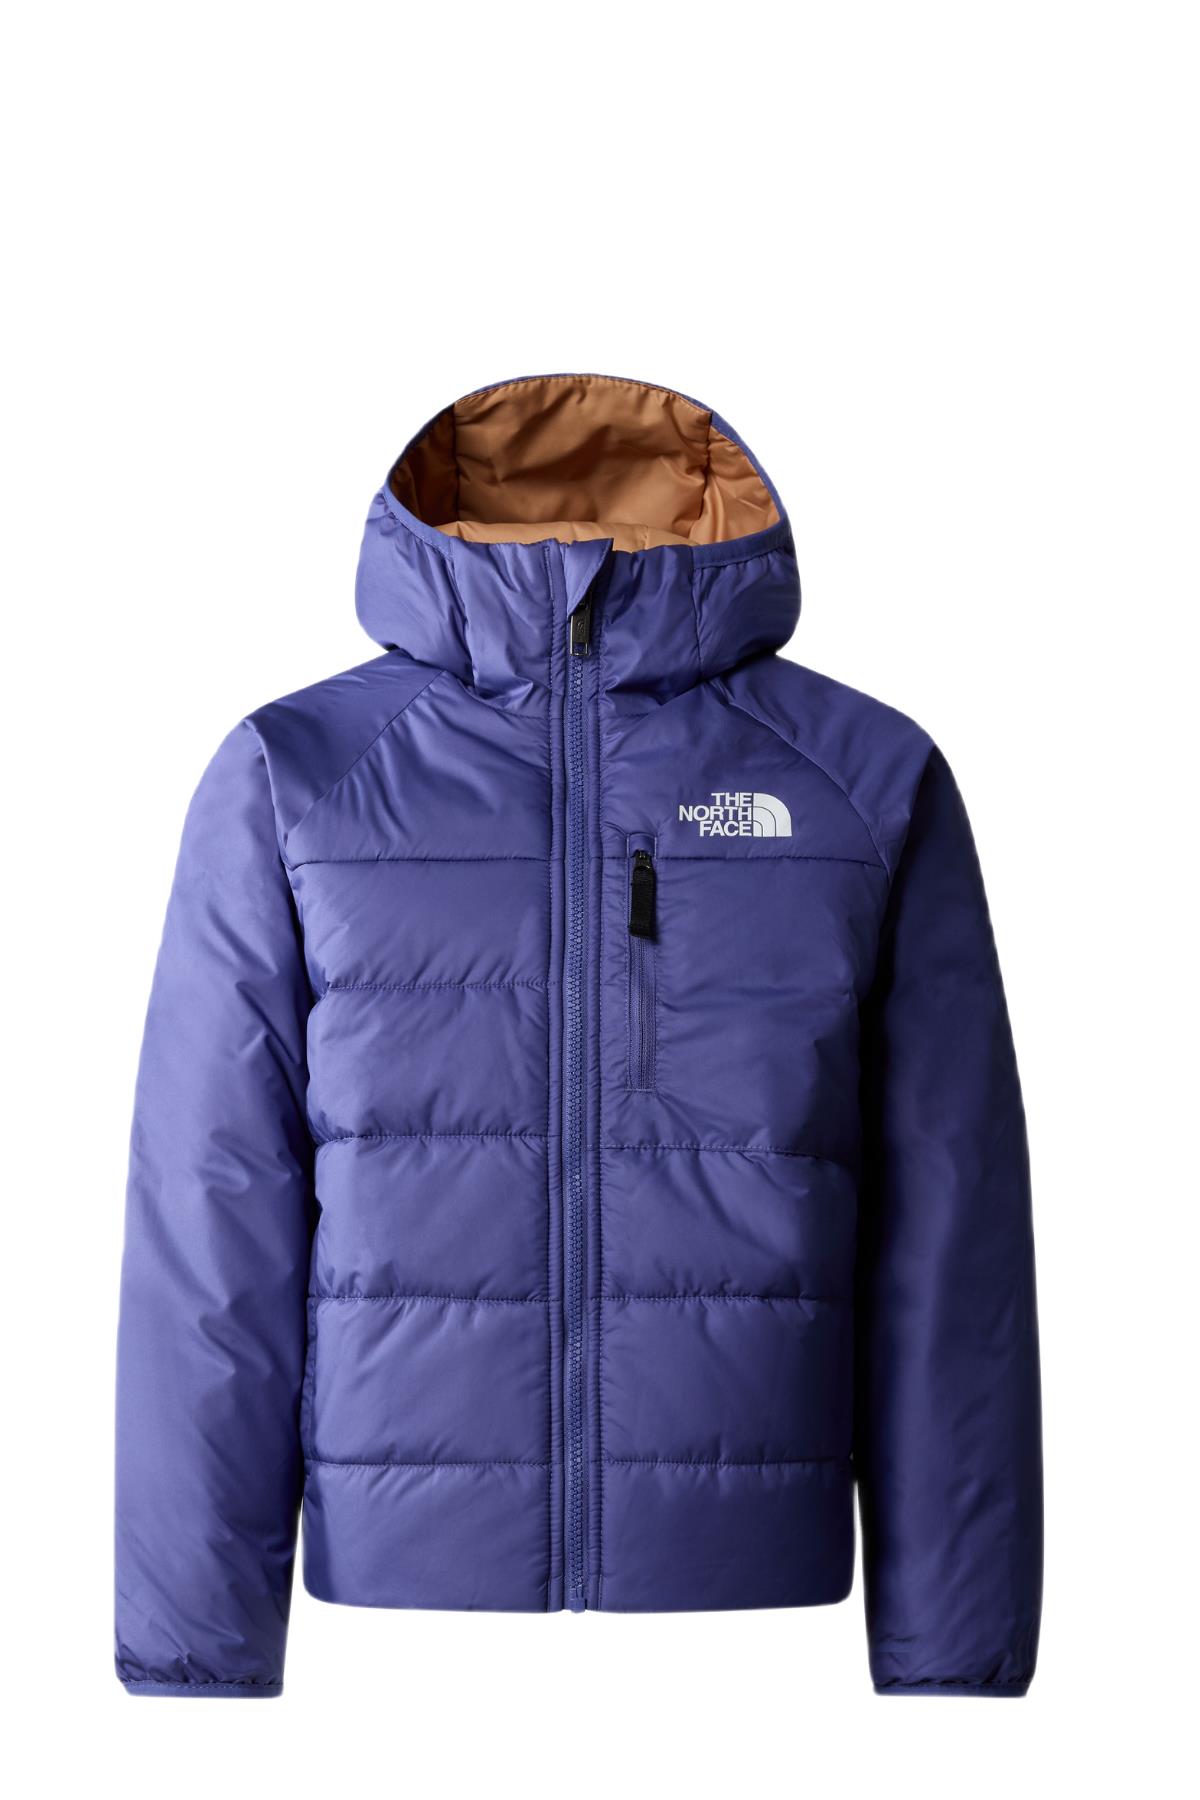 The North Face B Reversible Perrito Jacket Çocuk Mont Lacivert Sarı